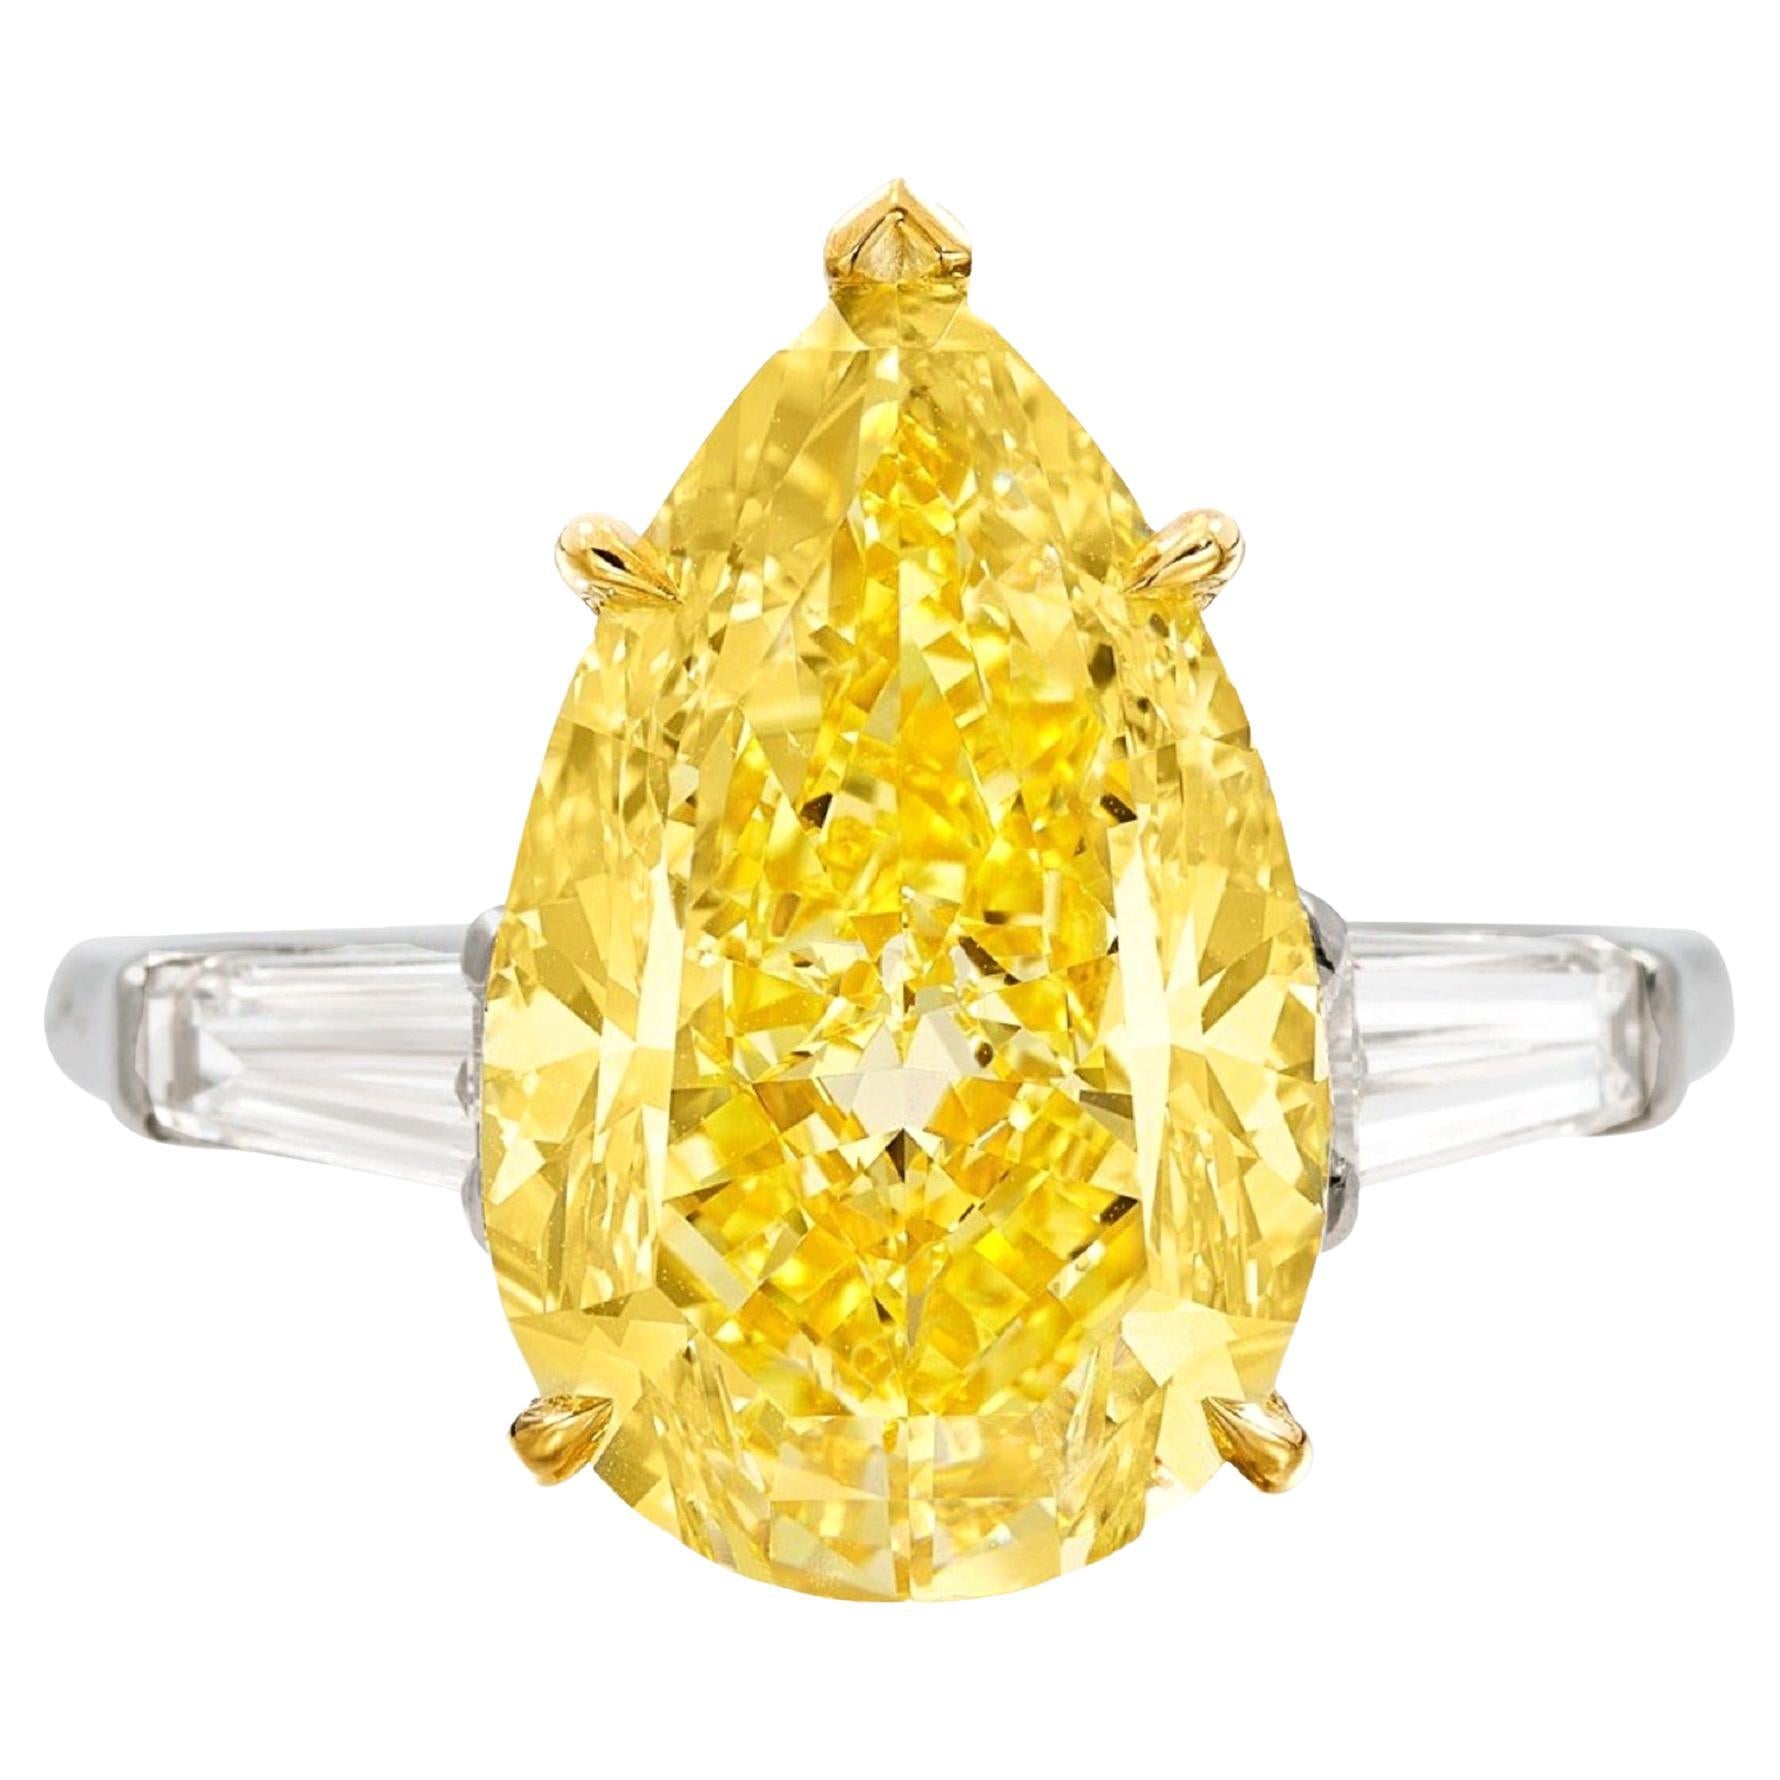 GIA-zertifizierter Solitär-Ring mit 8.25 Karat intensiv gelbem Fancy-Diamant